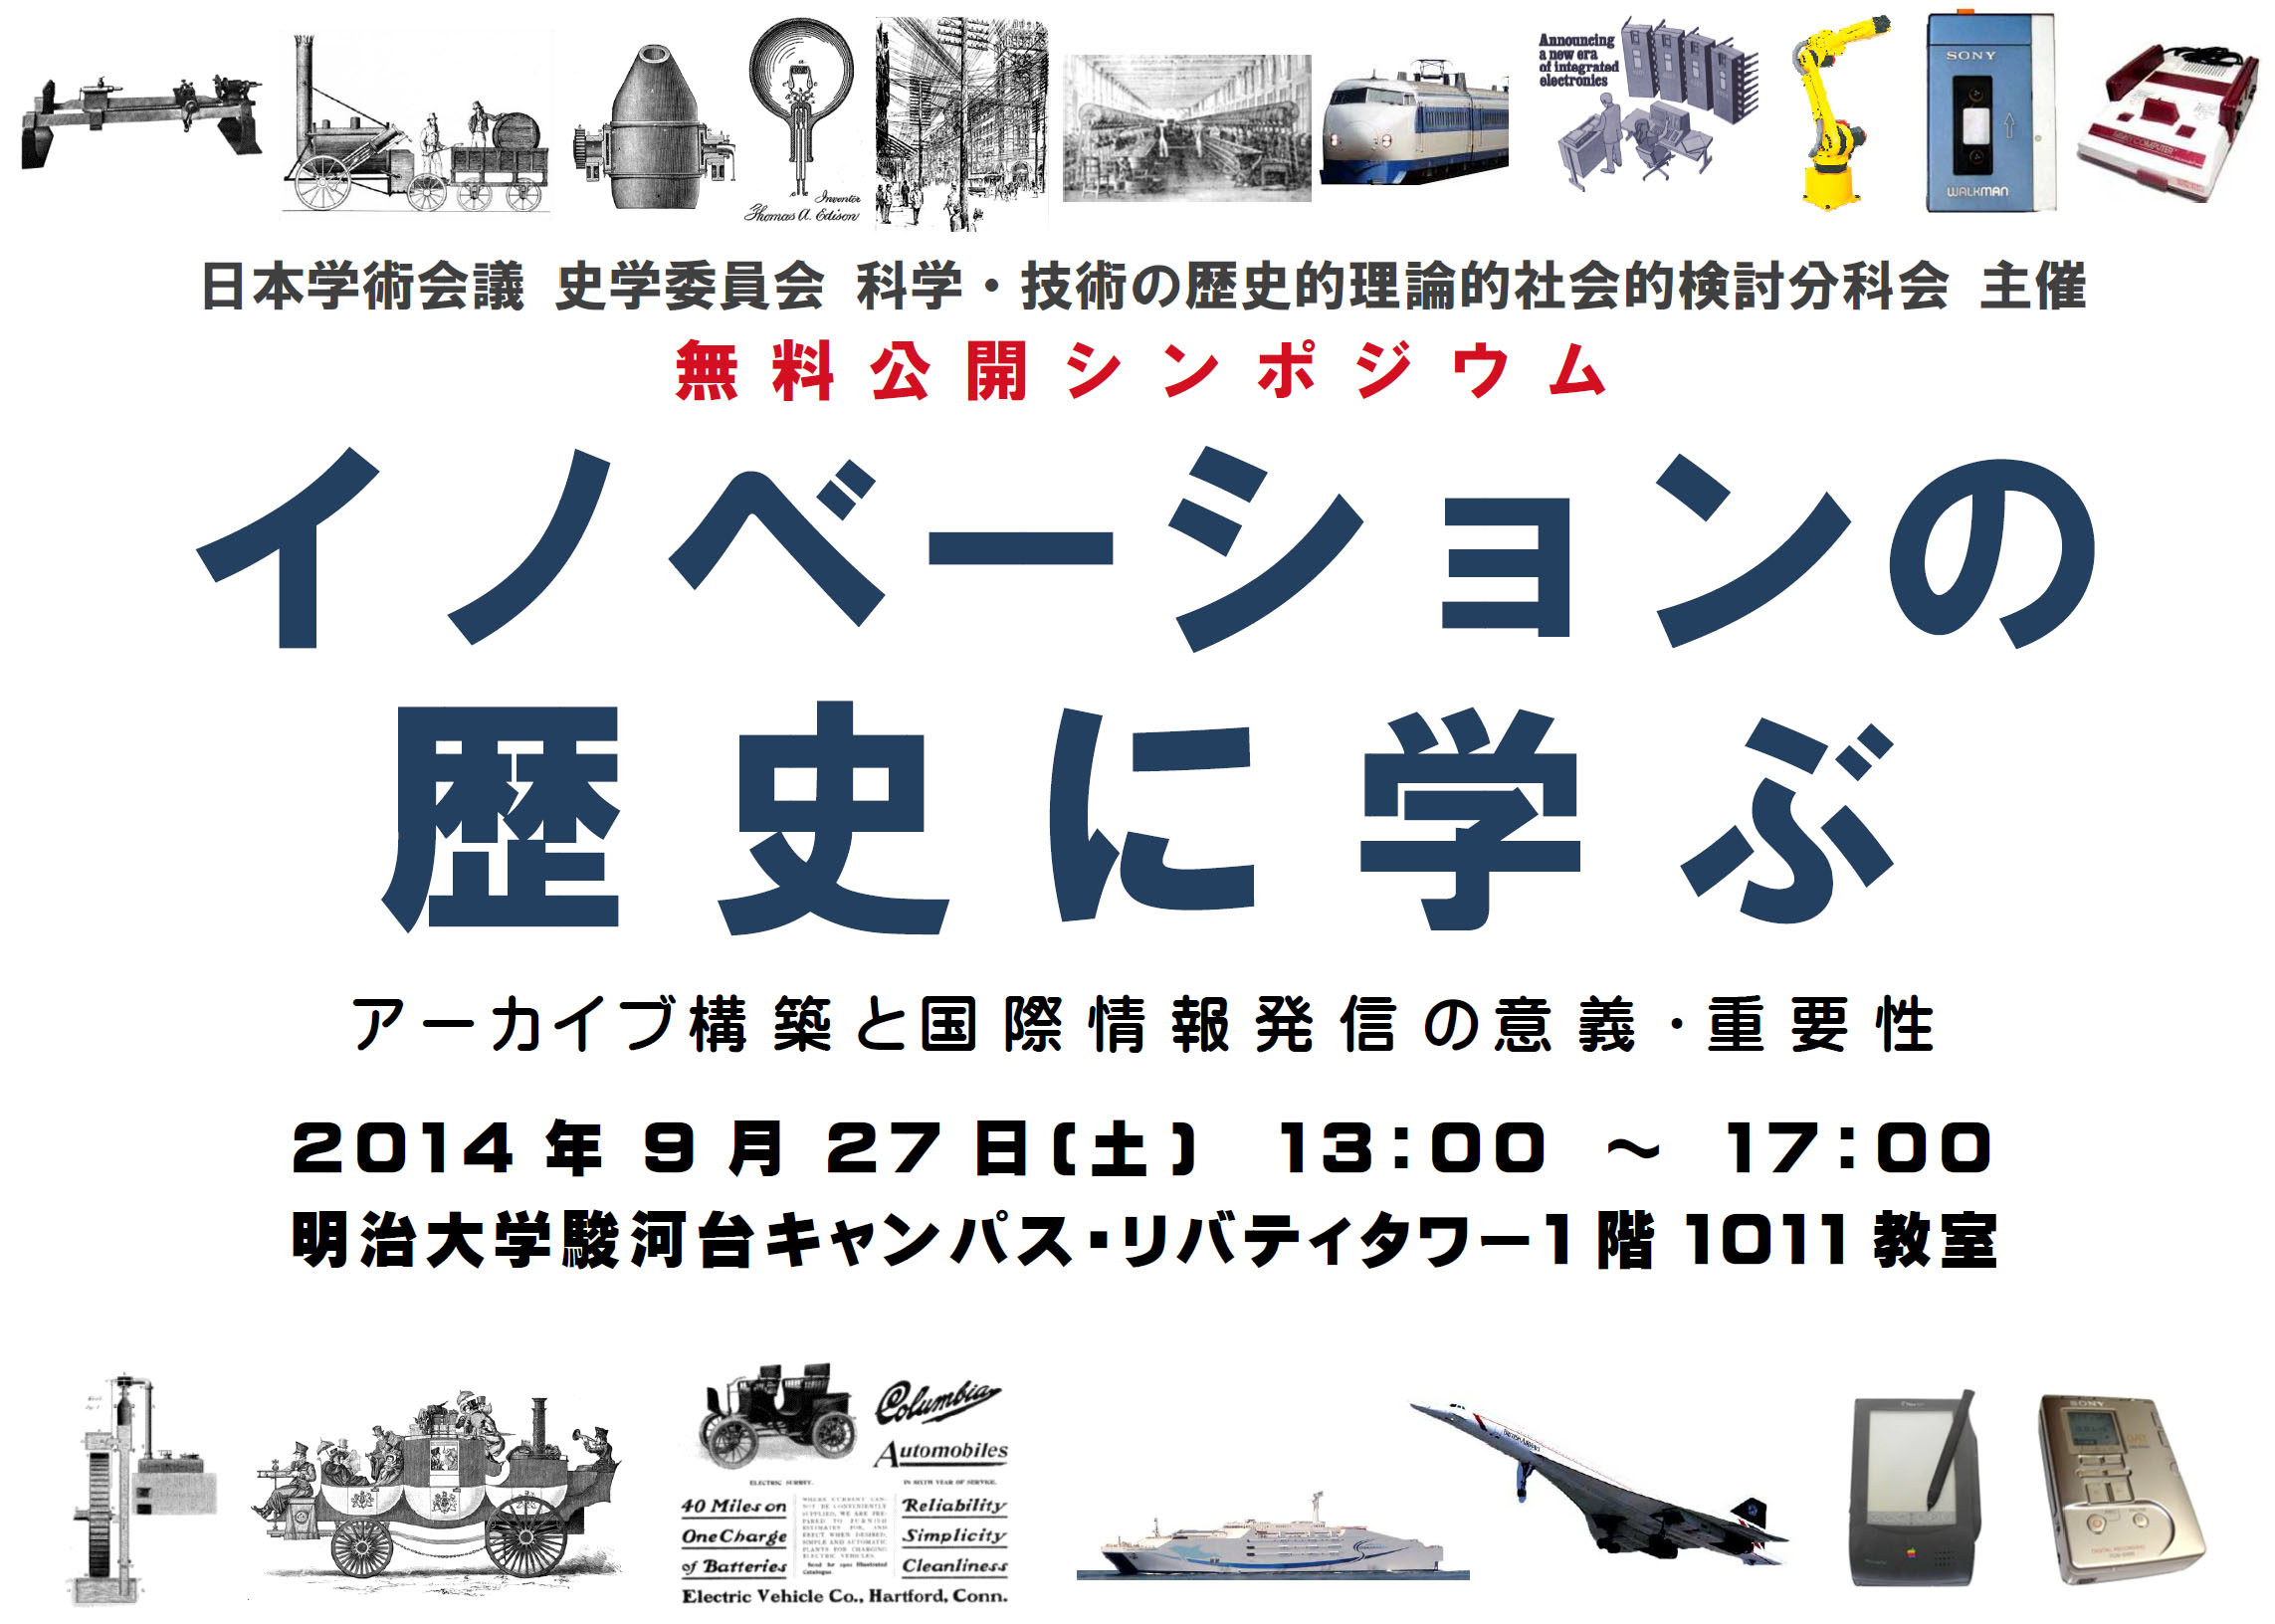 2014年9月27日開催 公開シンポジウム 「イノベーションの歴史に学ぶ」